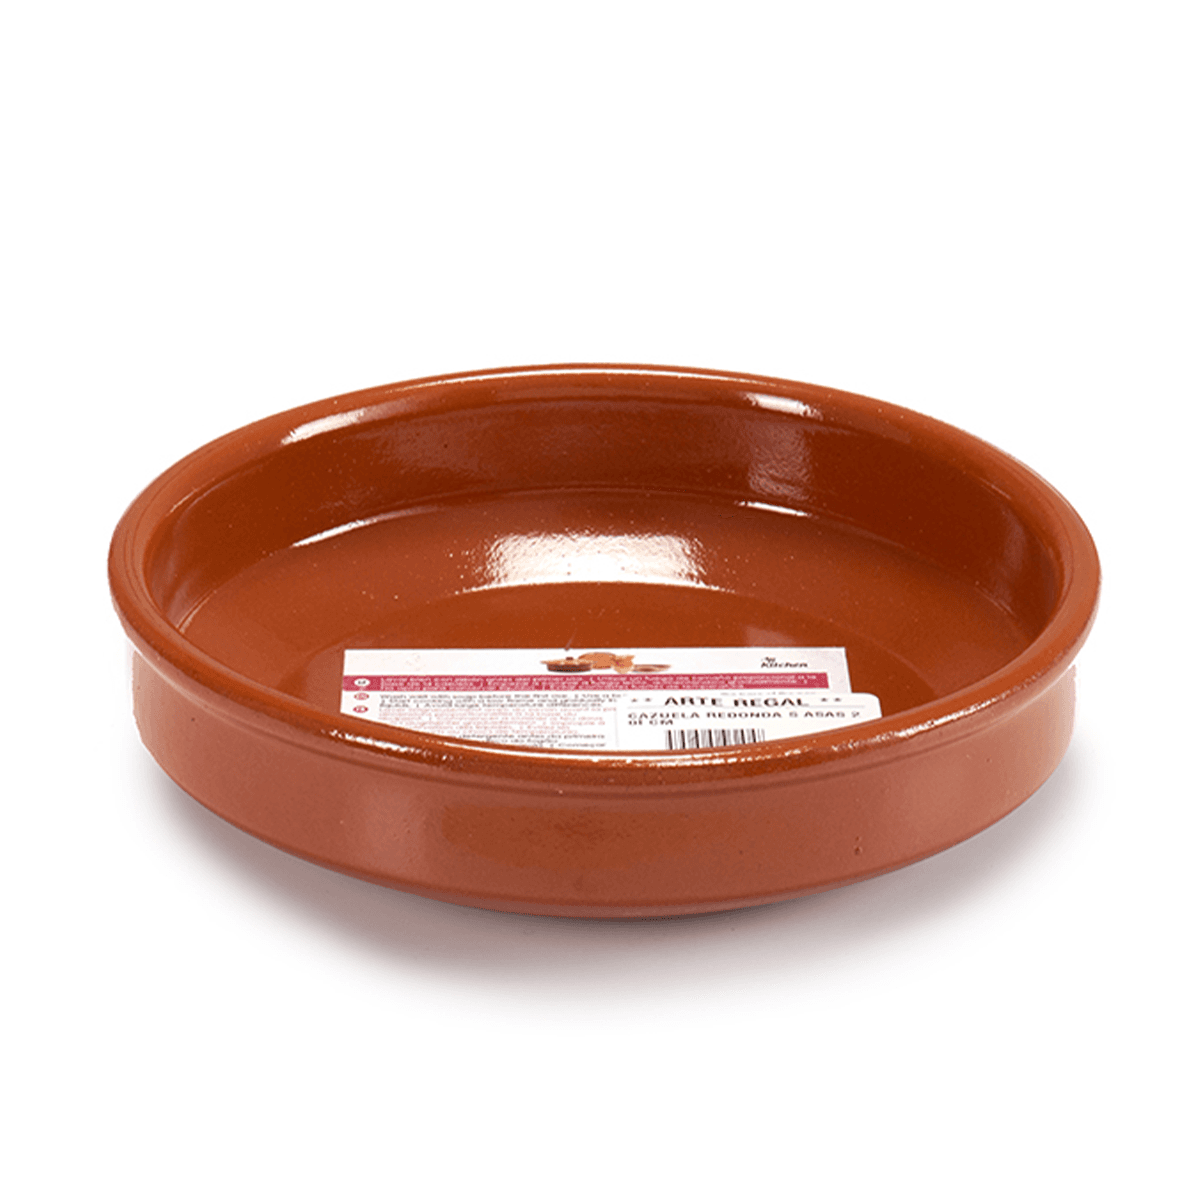 صحن فخار دائري عميق 20 سم صناعة اسبانيا بني آرت ريجال Arte Regal Brown Clay Round Deep Plate